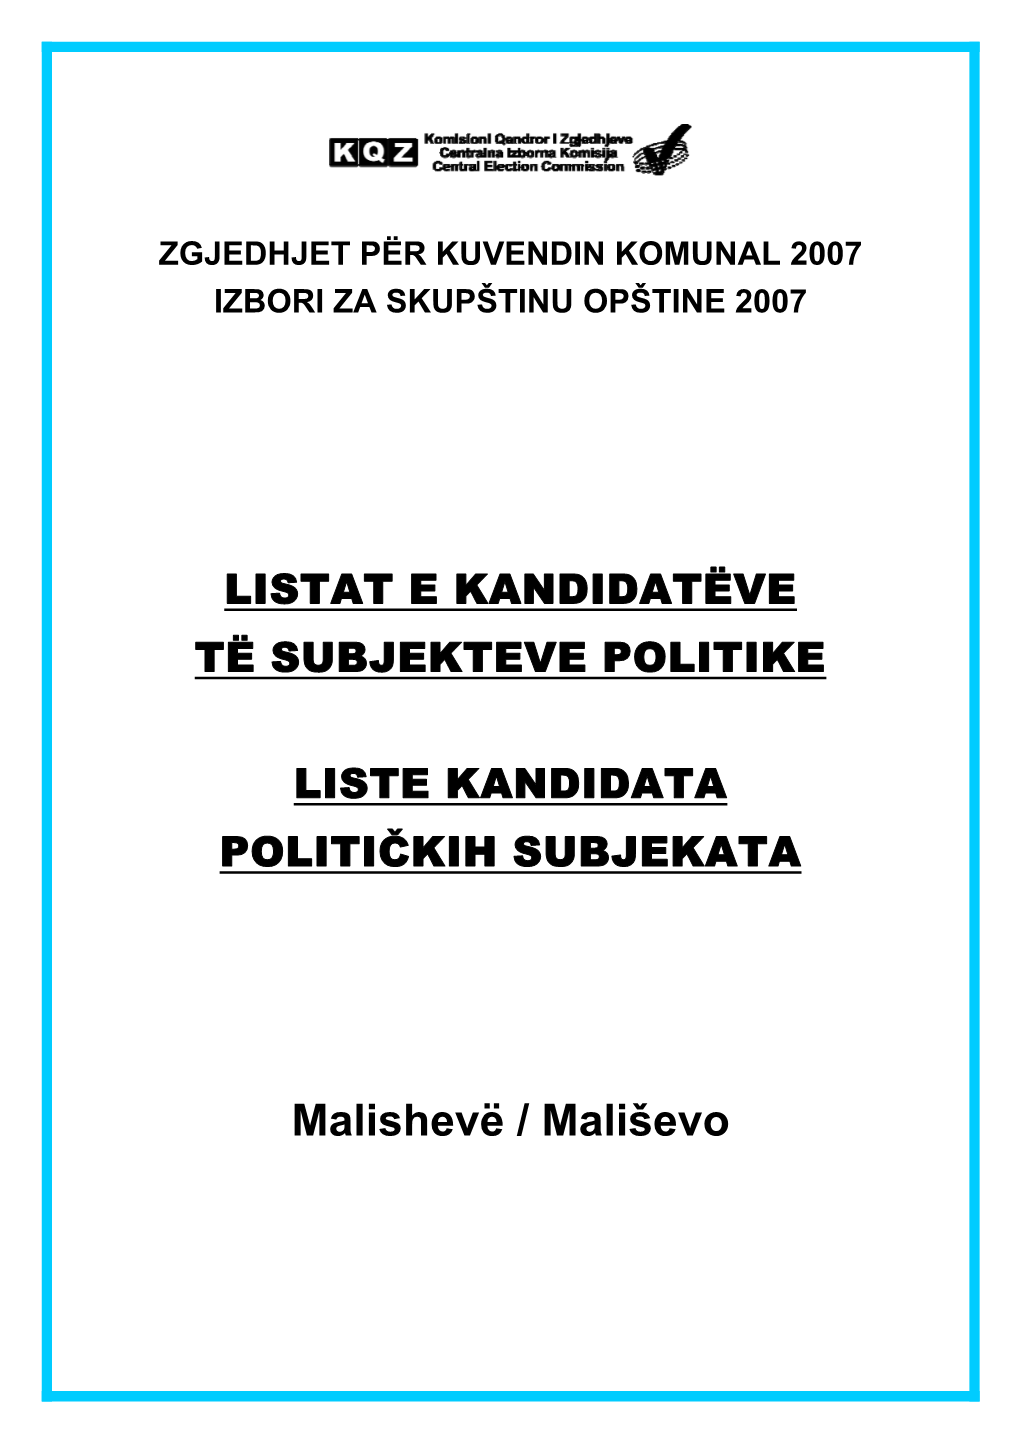 Malishevë / Mališevo 39